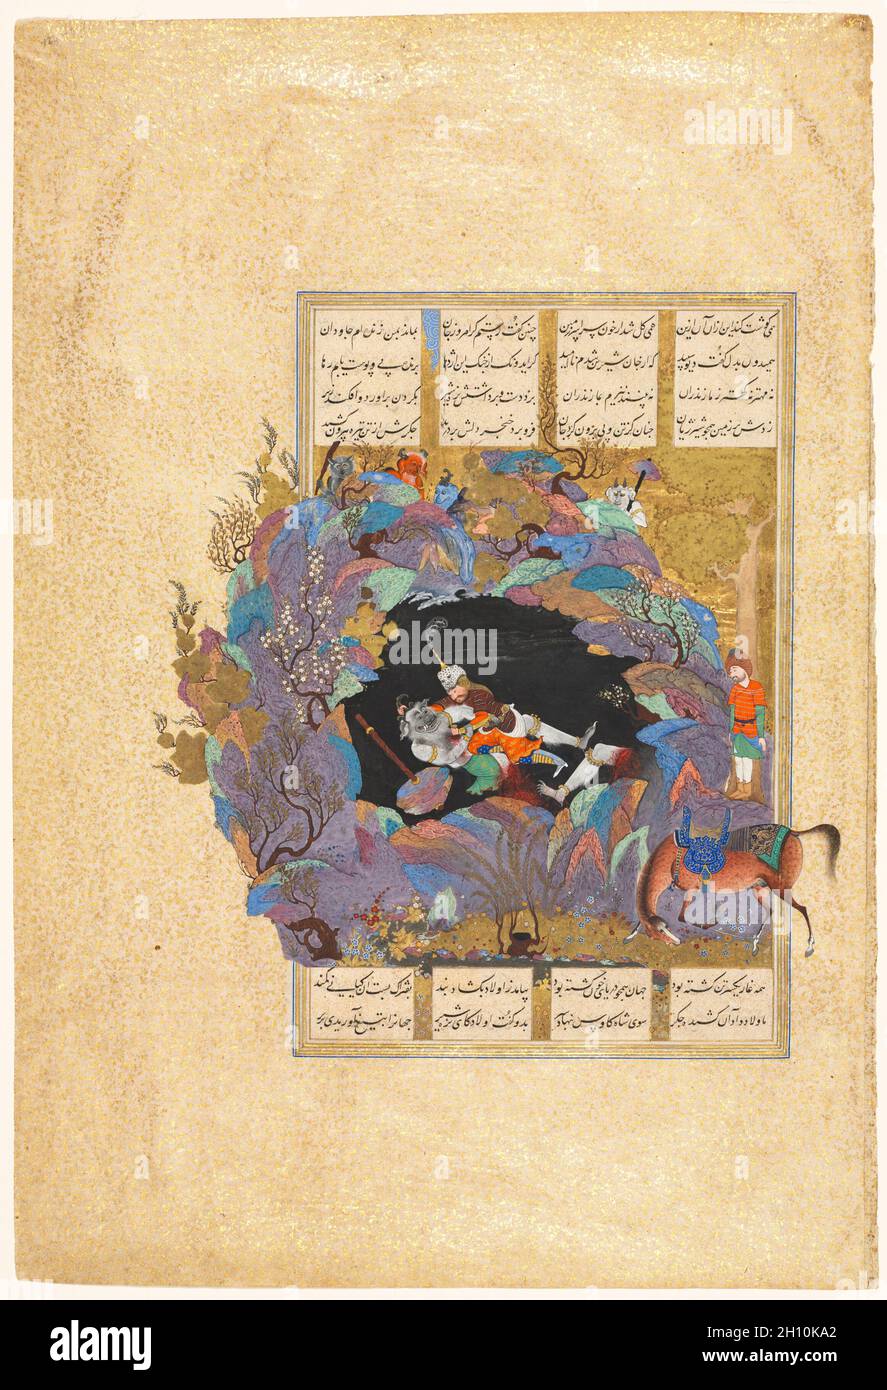 Settimo corso di Rustam: Uccide la Div Bianca, folio 124 da uno Shah-nama (Libro dei Re) di Firdausi (Persiano, circa 934-1020), 1522–37. Attribuito ad Abd al-Vahhab (persiano, attivo circa 1516), attribuito a Mir Musavvir (Iraniano, c.. 1510-1555). Acquerello opaco, oro e argento su carta; foglio: 47.5 x 32.2 cm (18 11/16 x 12 11/16 poll.); immagine: 28.4 x 18.5 cm (11 3/16 x 7 5/16 poll.). Foto Stock